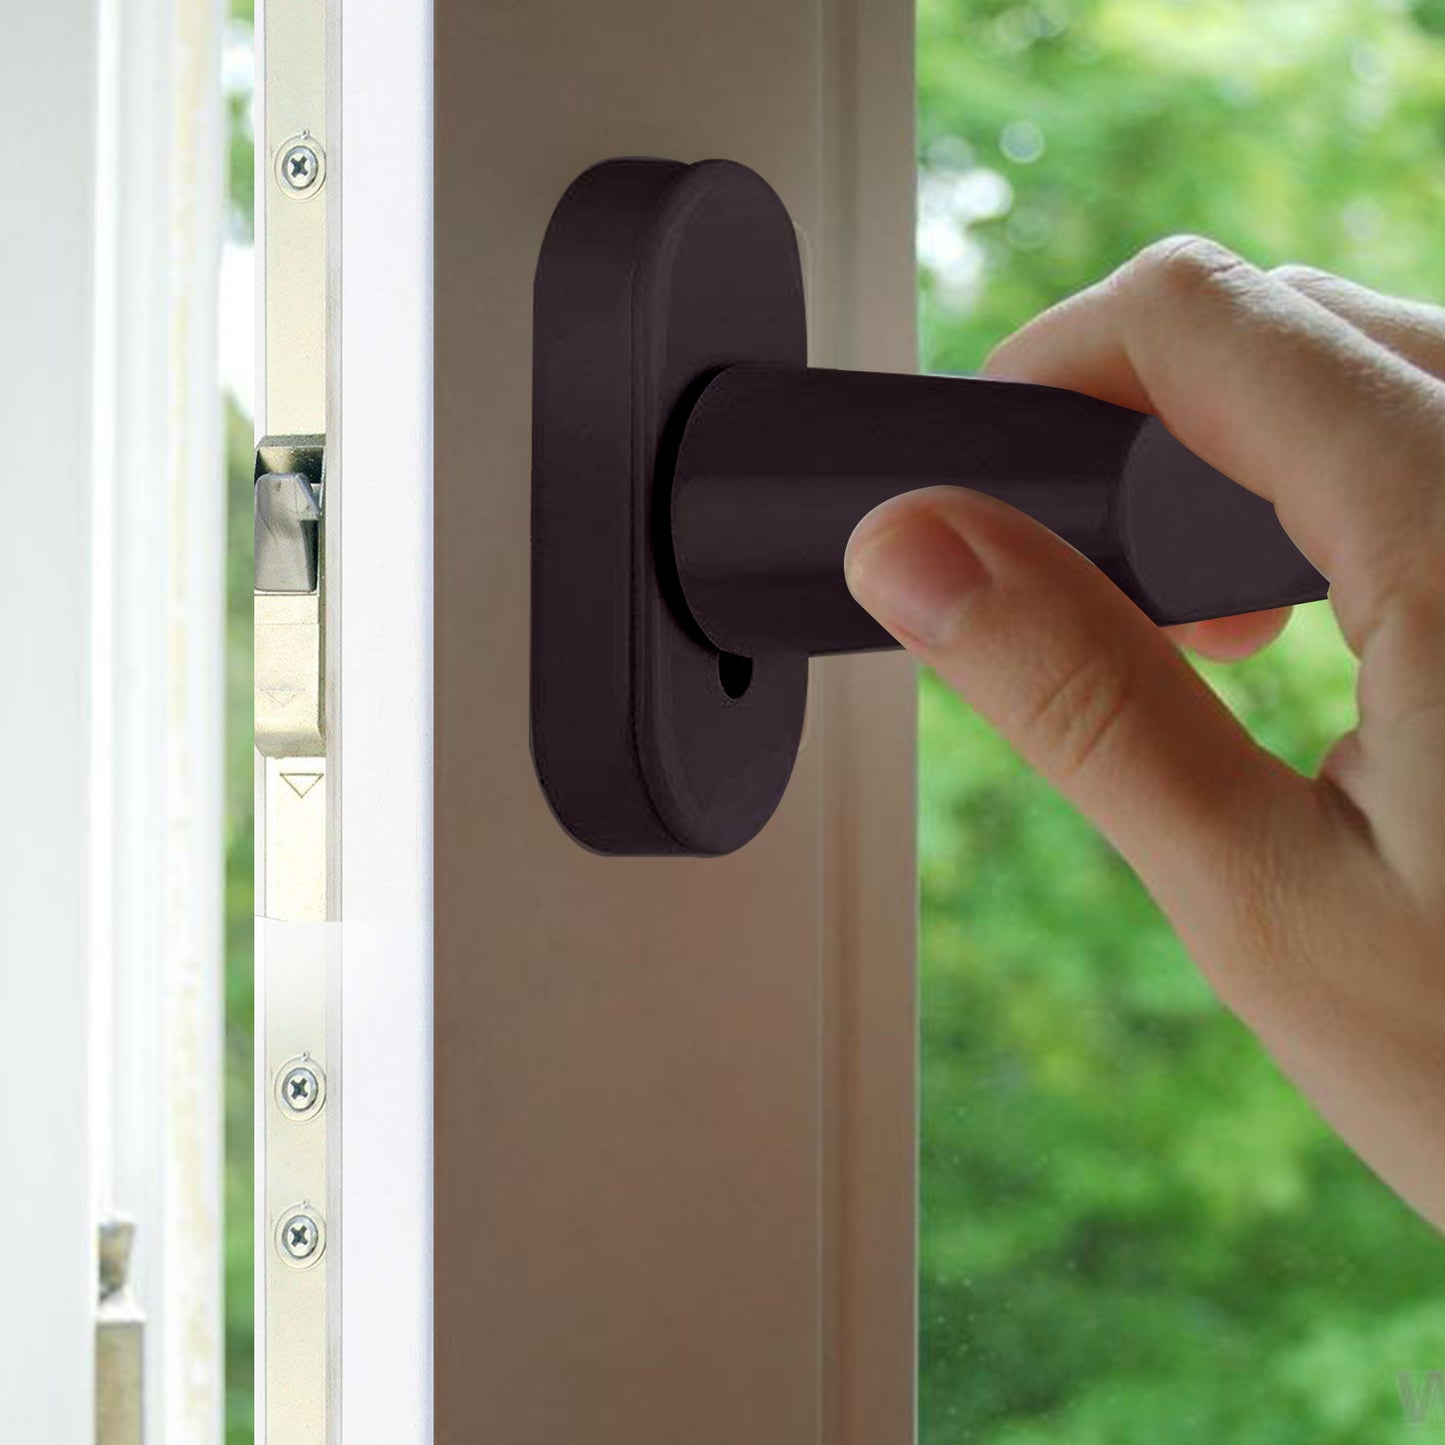 PALMAT kwaliteit aluminium handgreep voor raam | voor openslaande ramen en schuifdeuren / deuren | Naar binnen of naar buiten openen